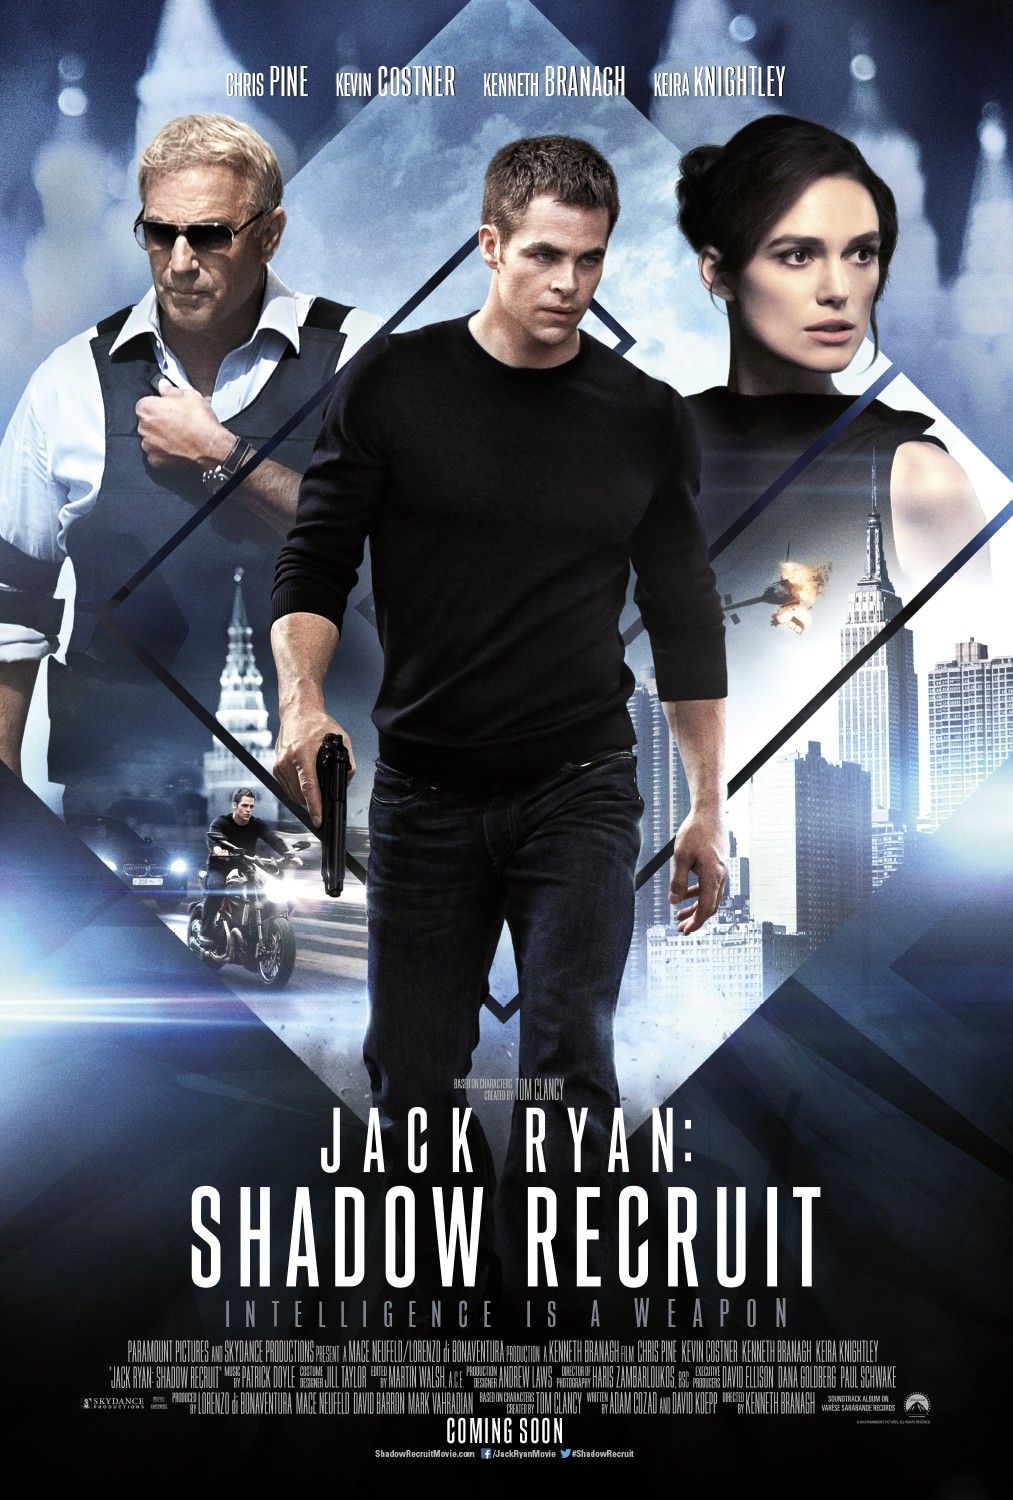 Jack Ryan: Shadow Recuit UK Poster